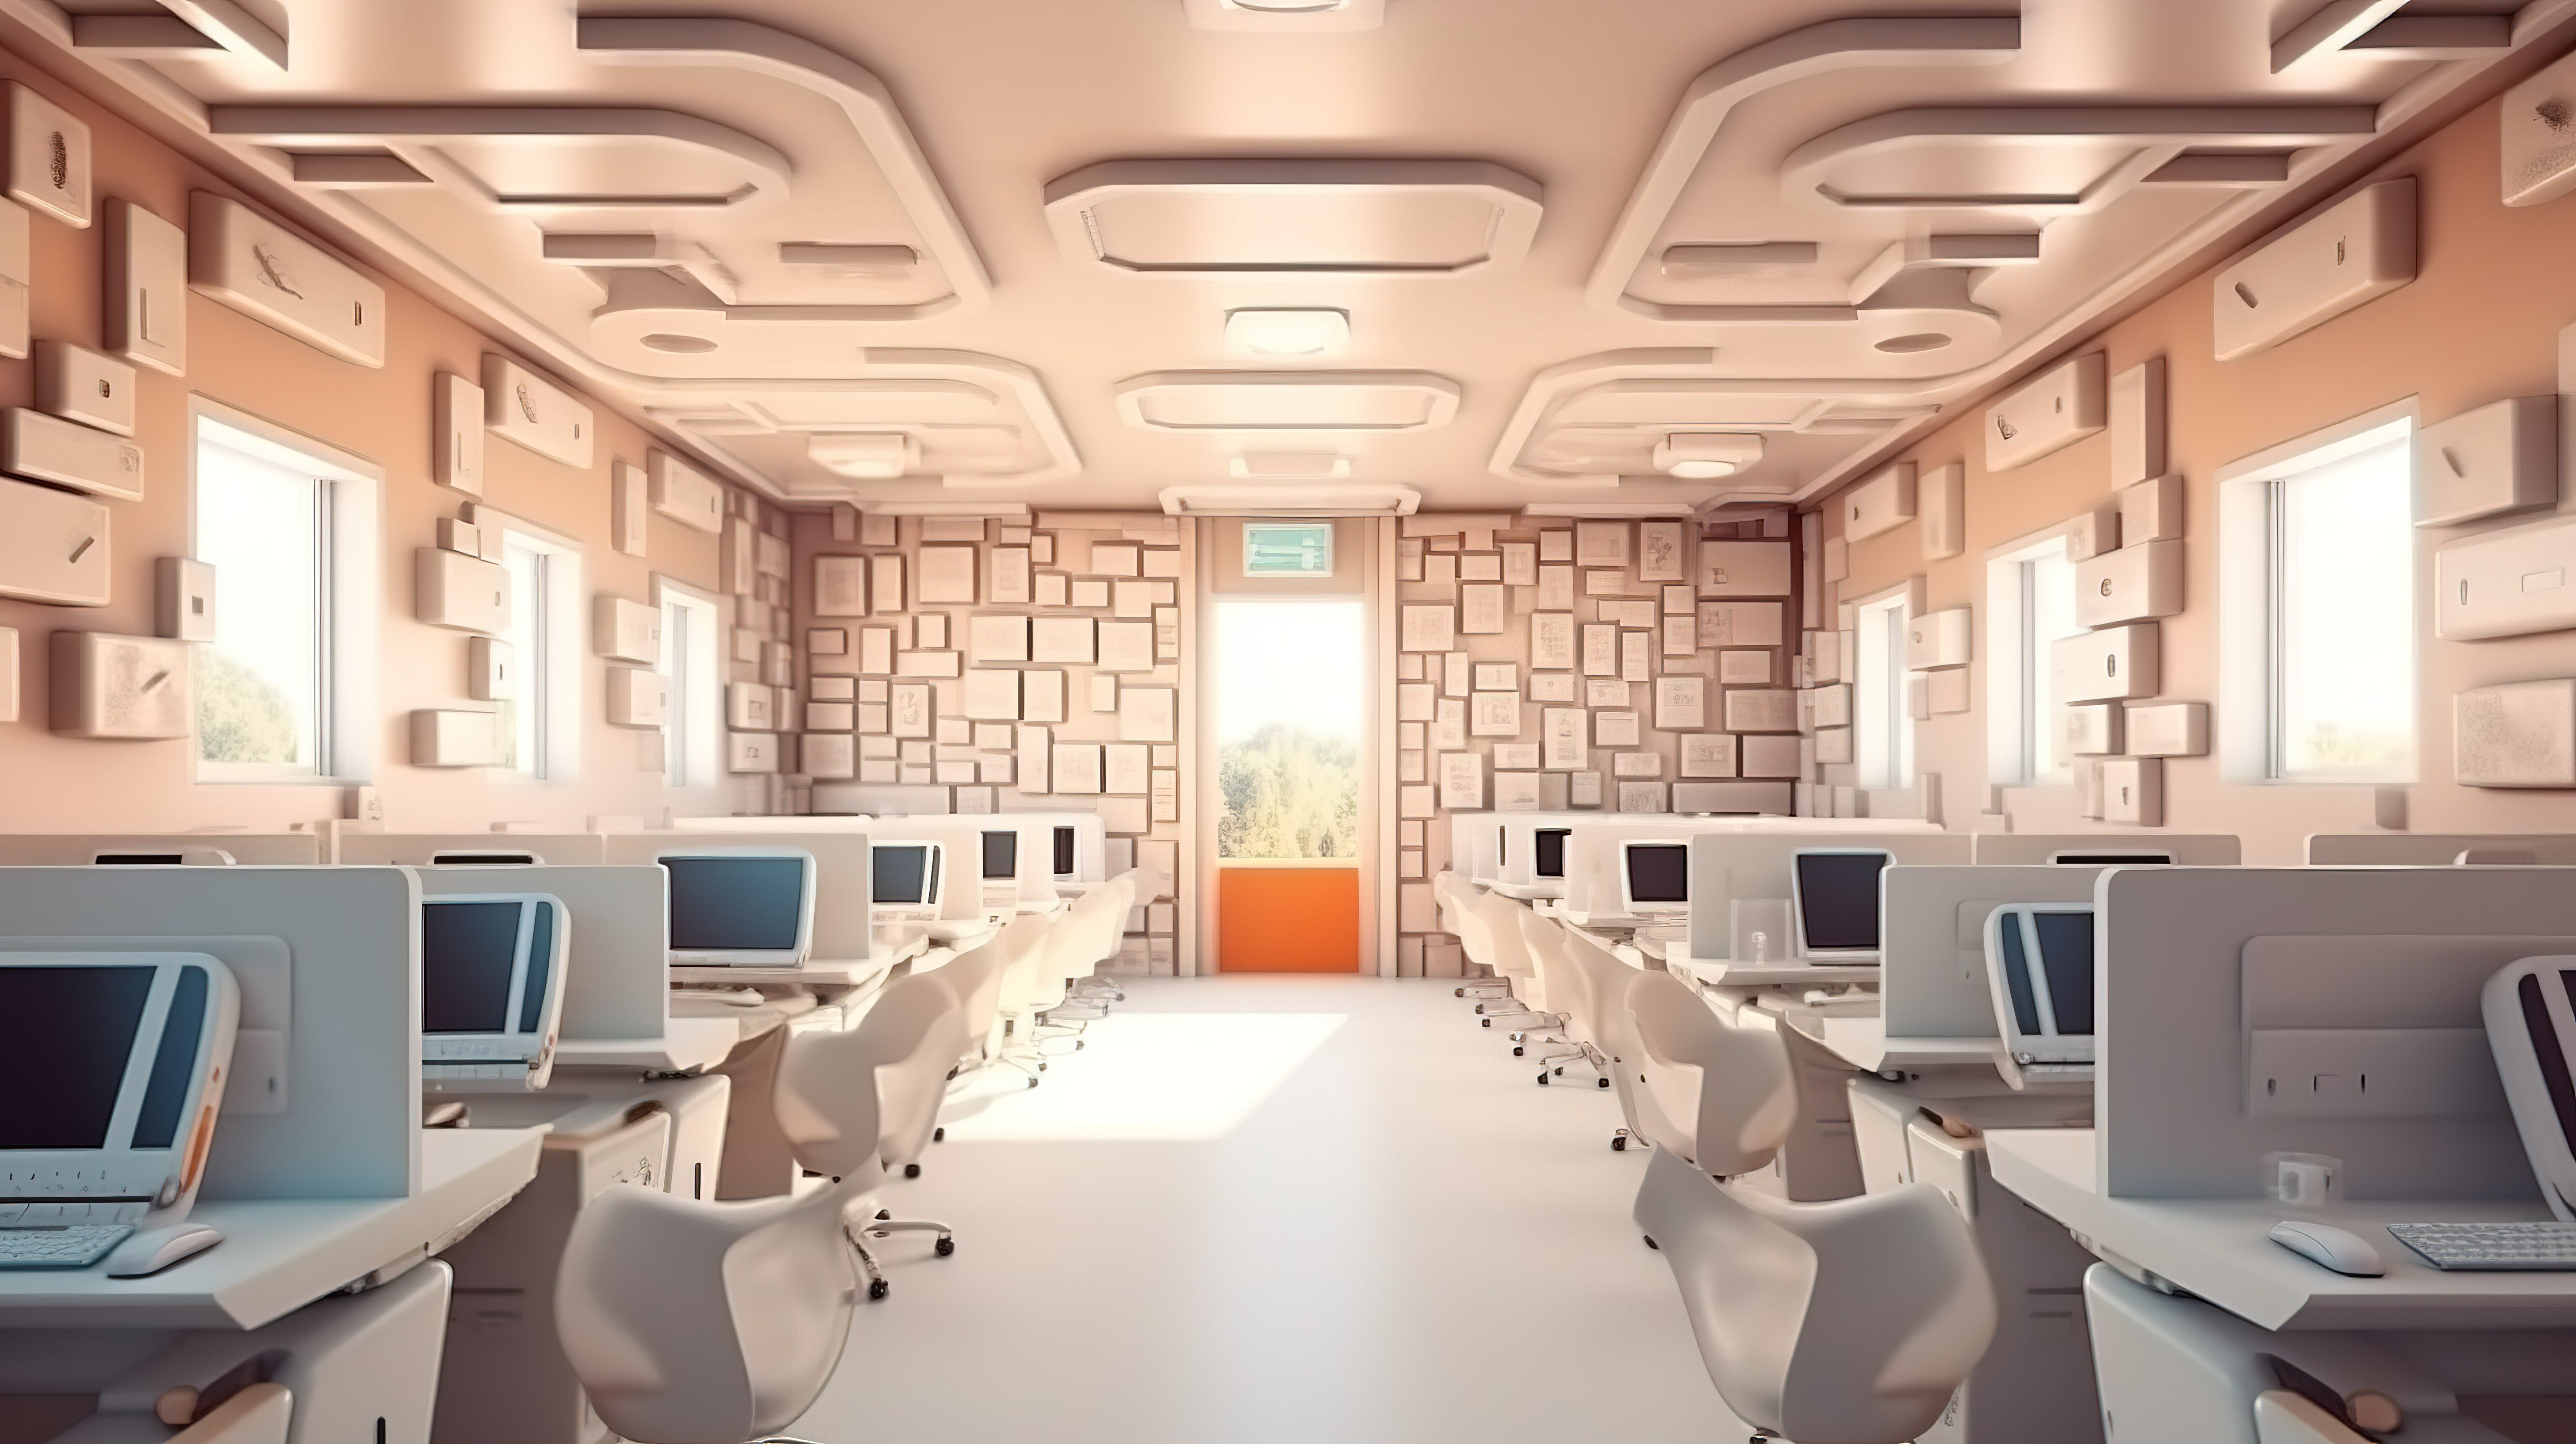 3D 渲染计算机编程课堂在教育背景下返回学校的插图图片